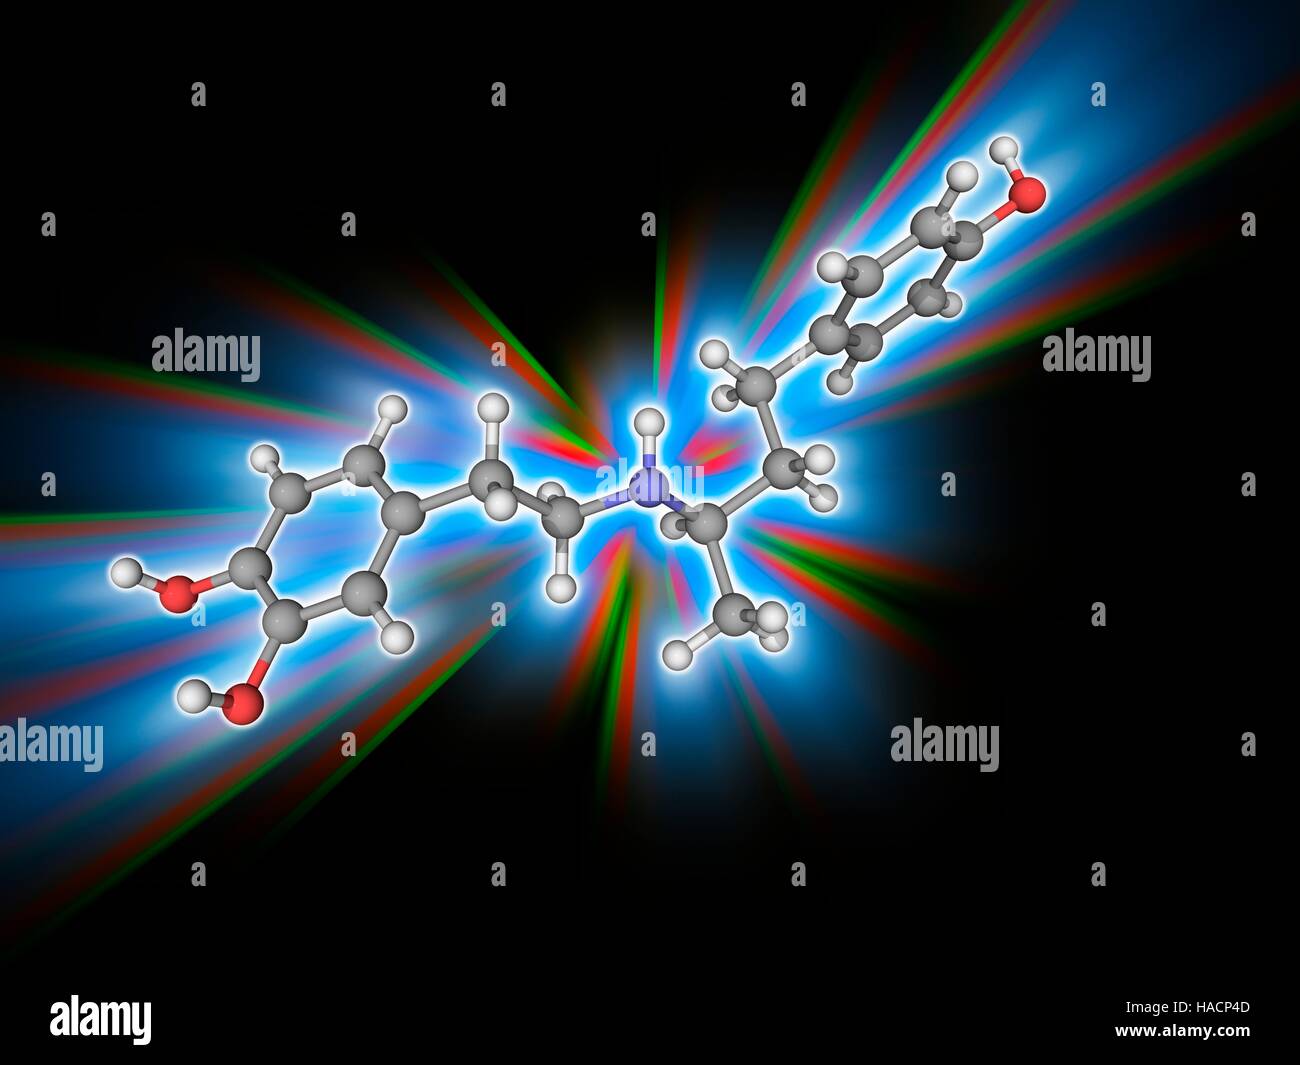 Dobutamin. Molekülmodell sympathomimetische Droge Dobutamin (C18. H23. N.O3), verwendet in der Behandlung von Herzinsuffizienz und kardiogenem Schock. Atome als Kugeln dargestellt werden und sind farblich gekennzeichnet: Kohlenstoff (grau), Wasserstoff (weiß), Stickstoff (blau) und Sauerstoff (rot). Abbildung. Stockfoto